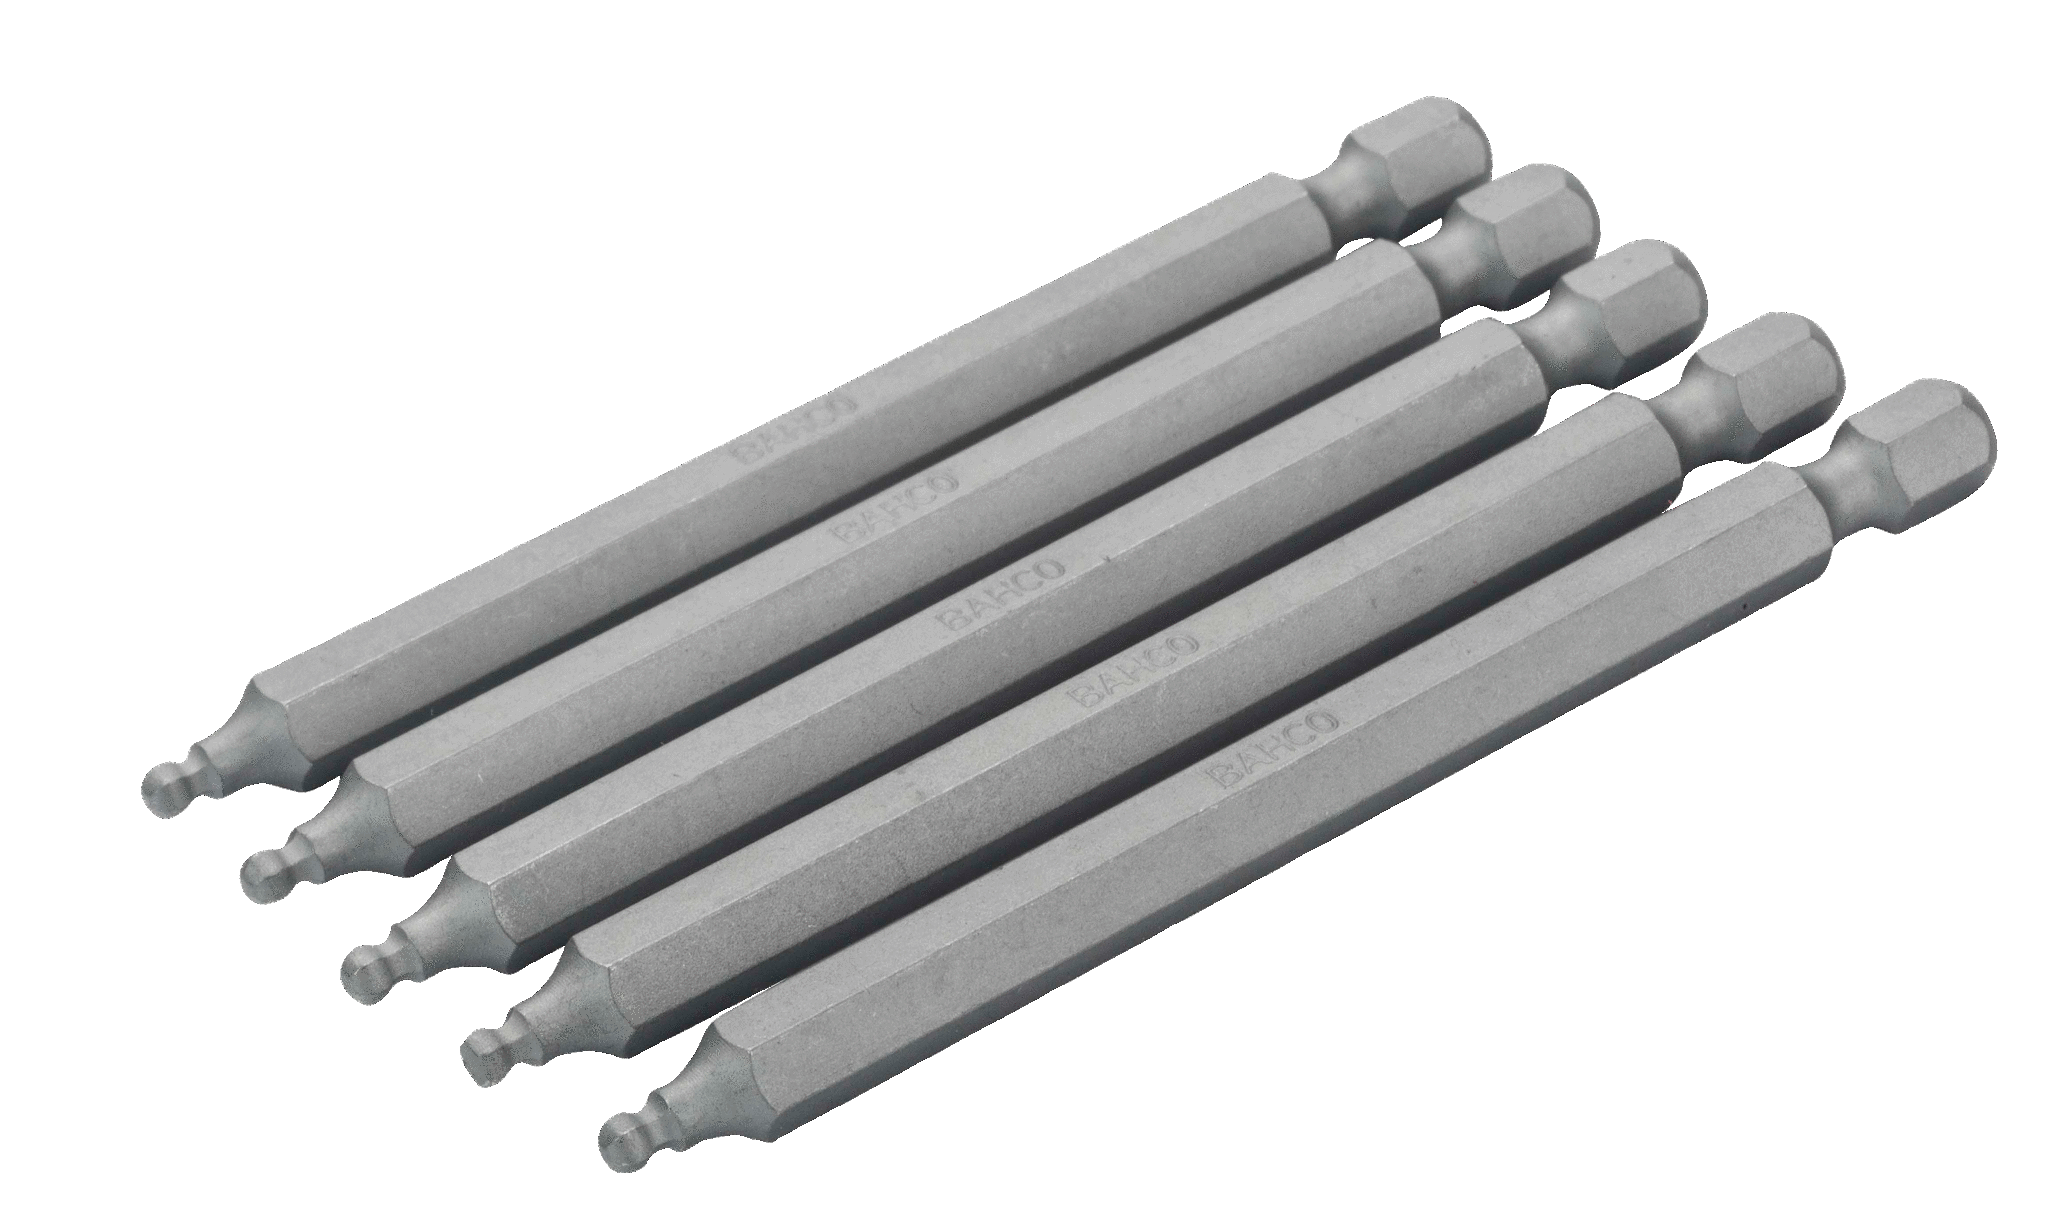 Шестигранные биты с шаровым наконечником для стандартных отверток, метрические размеры, 89 мм BAHCO 59S/H3BALL